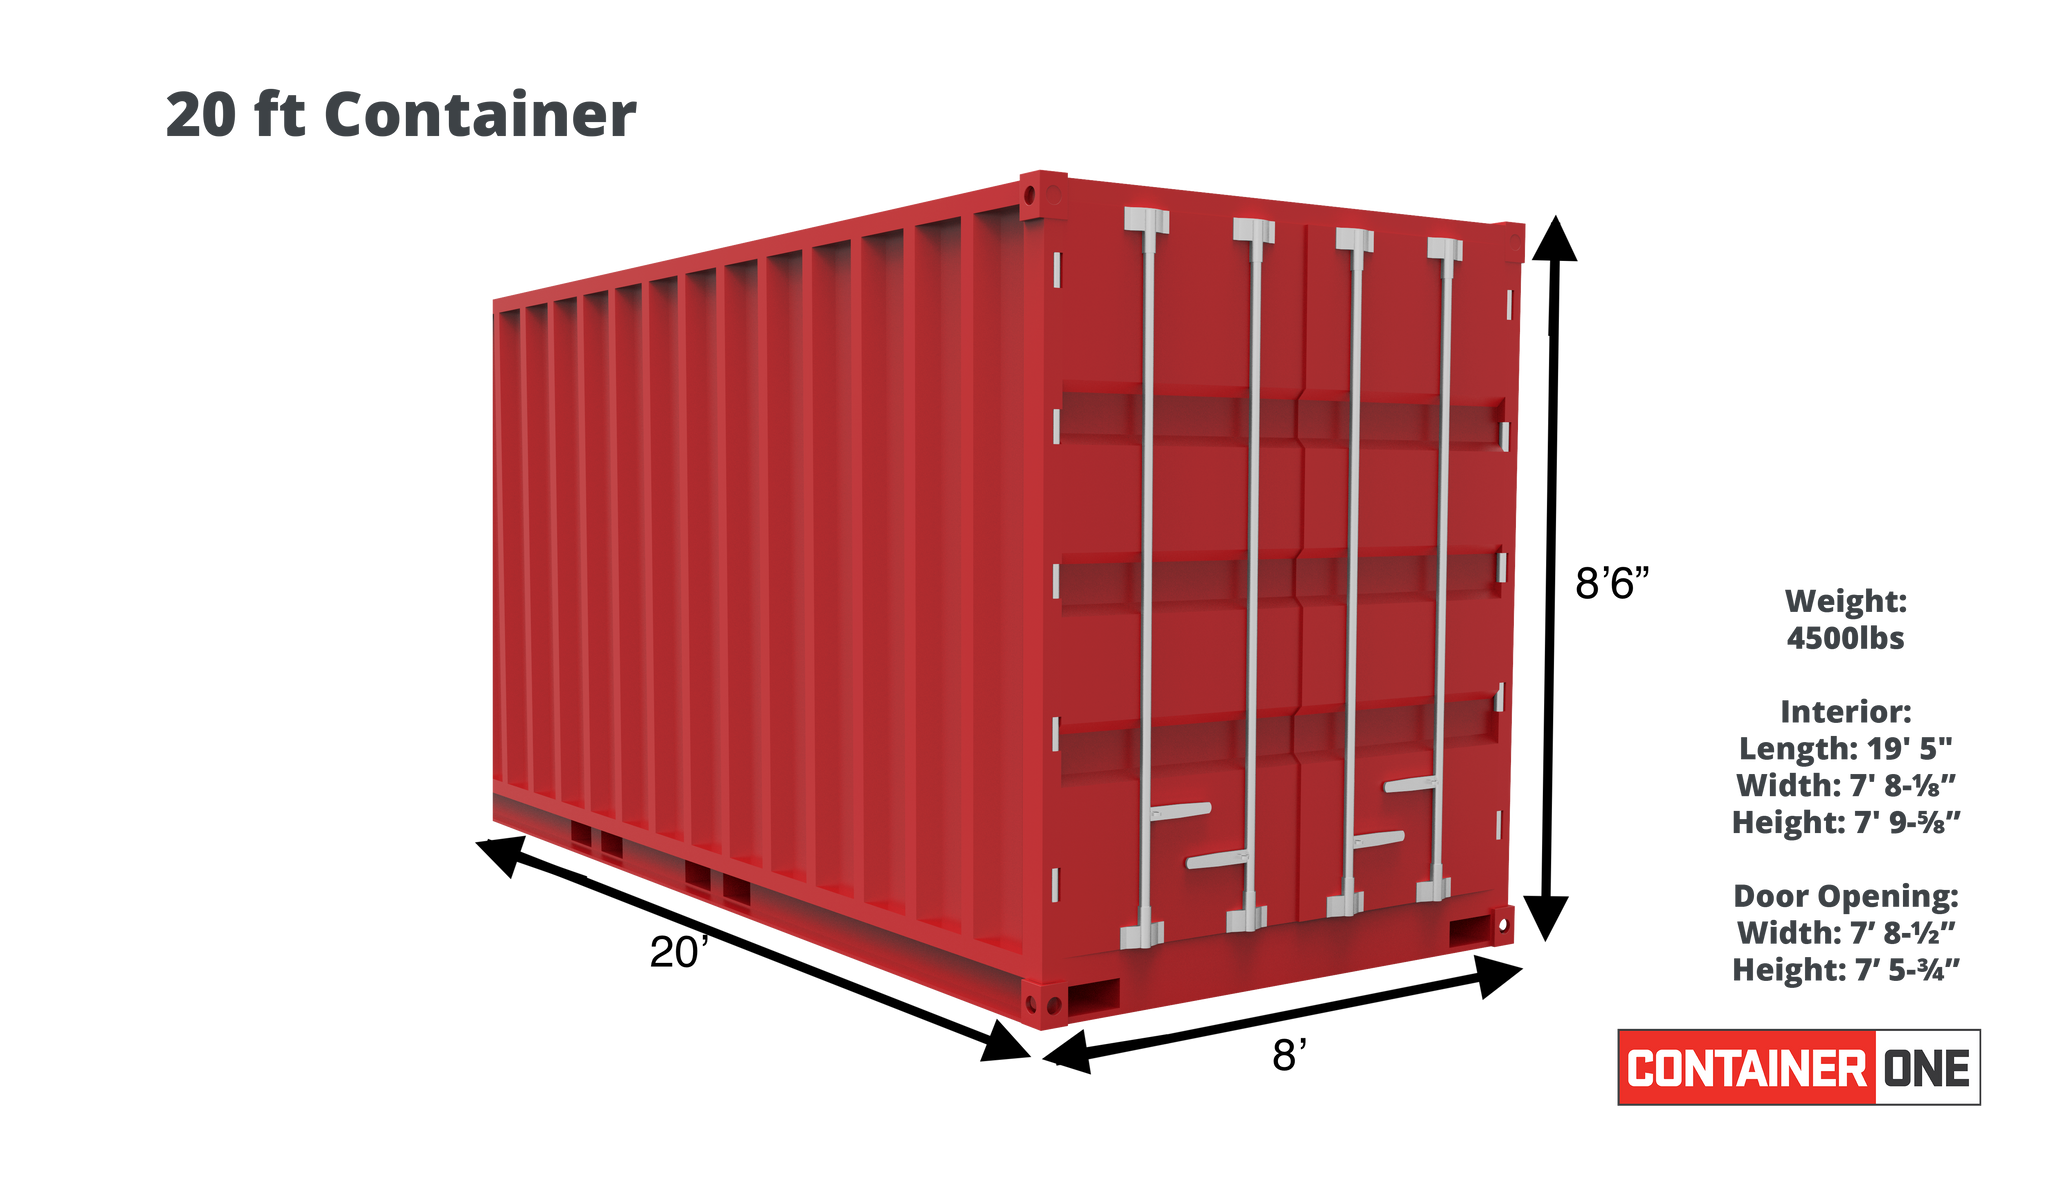 Контейнер 20 футов размеры вес. Высота контейнера 20 футов. 20 Ft контейнер. 20 Ft Container Dimensions. Длина 20 фут контейнера.